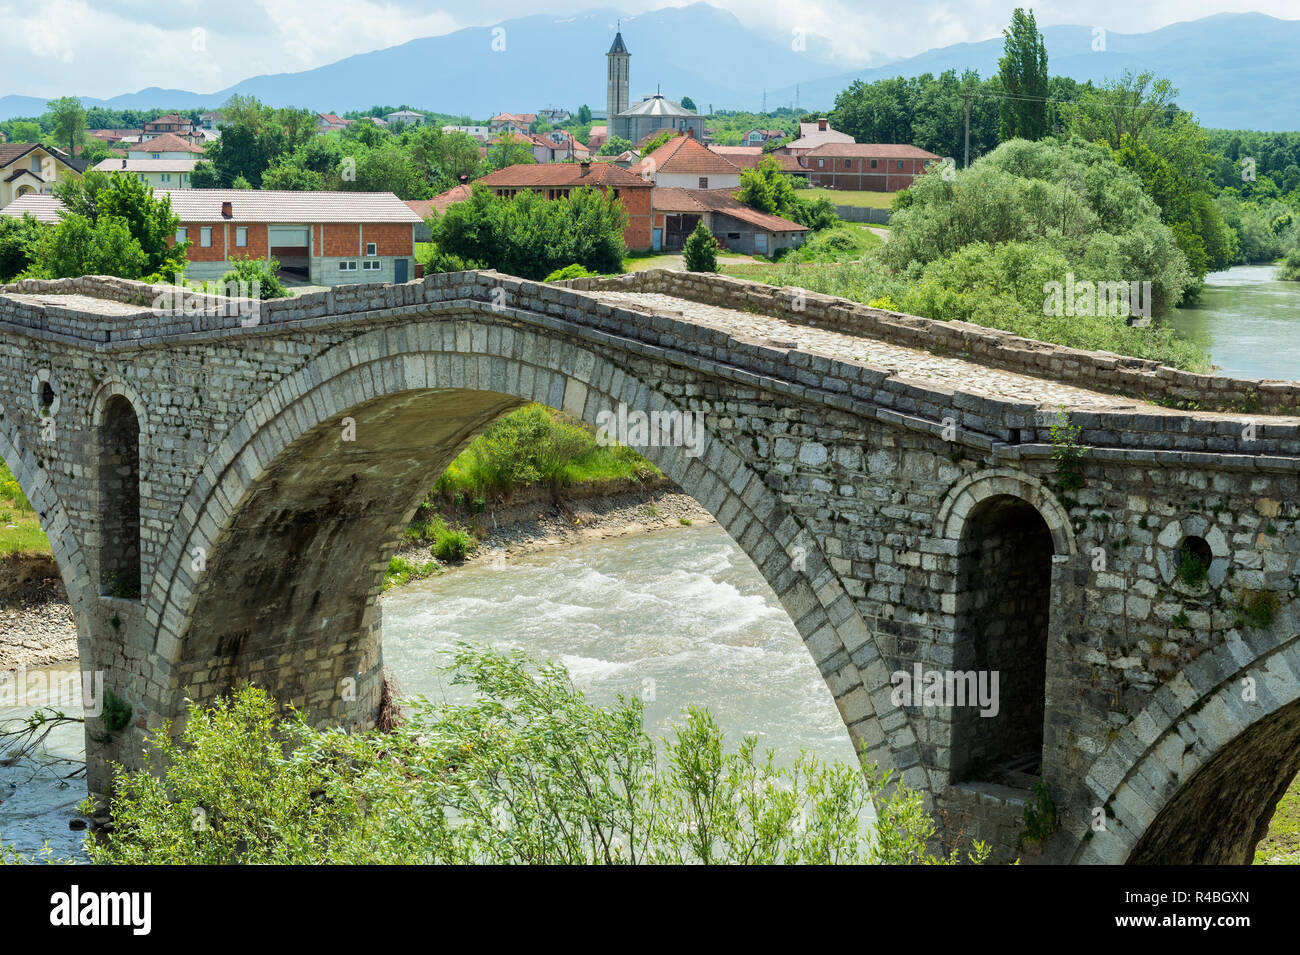 Ottoman style Terzijski Bridge or Tailor’s Bridge, Gjakova, Kosovo Stock Photo